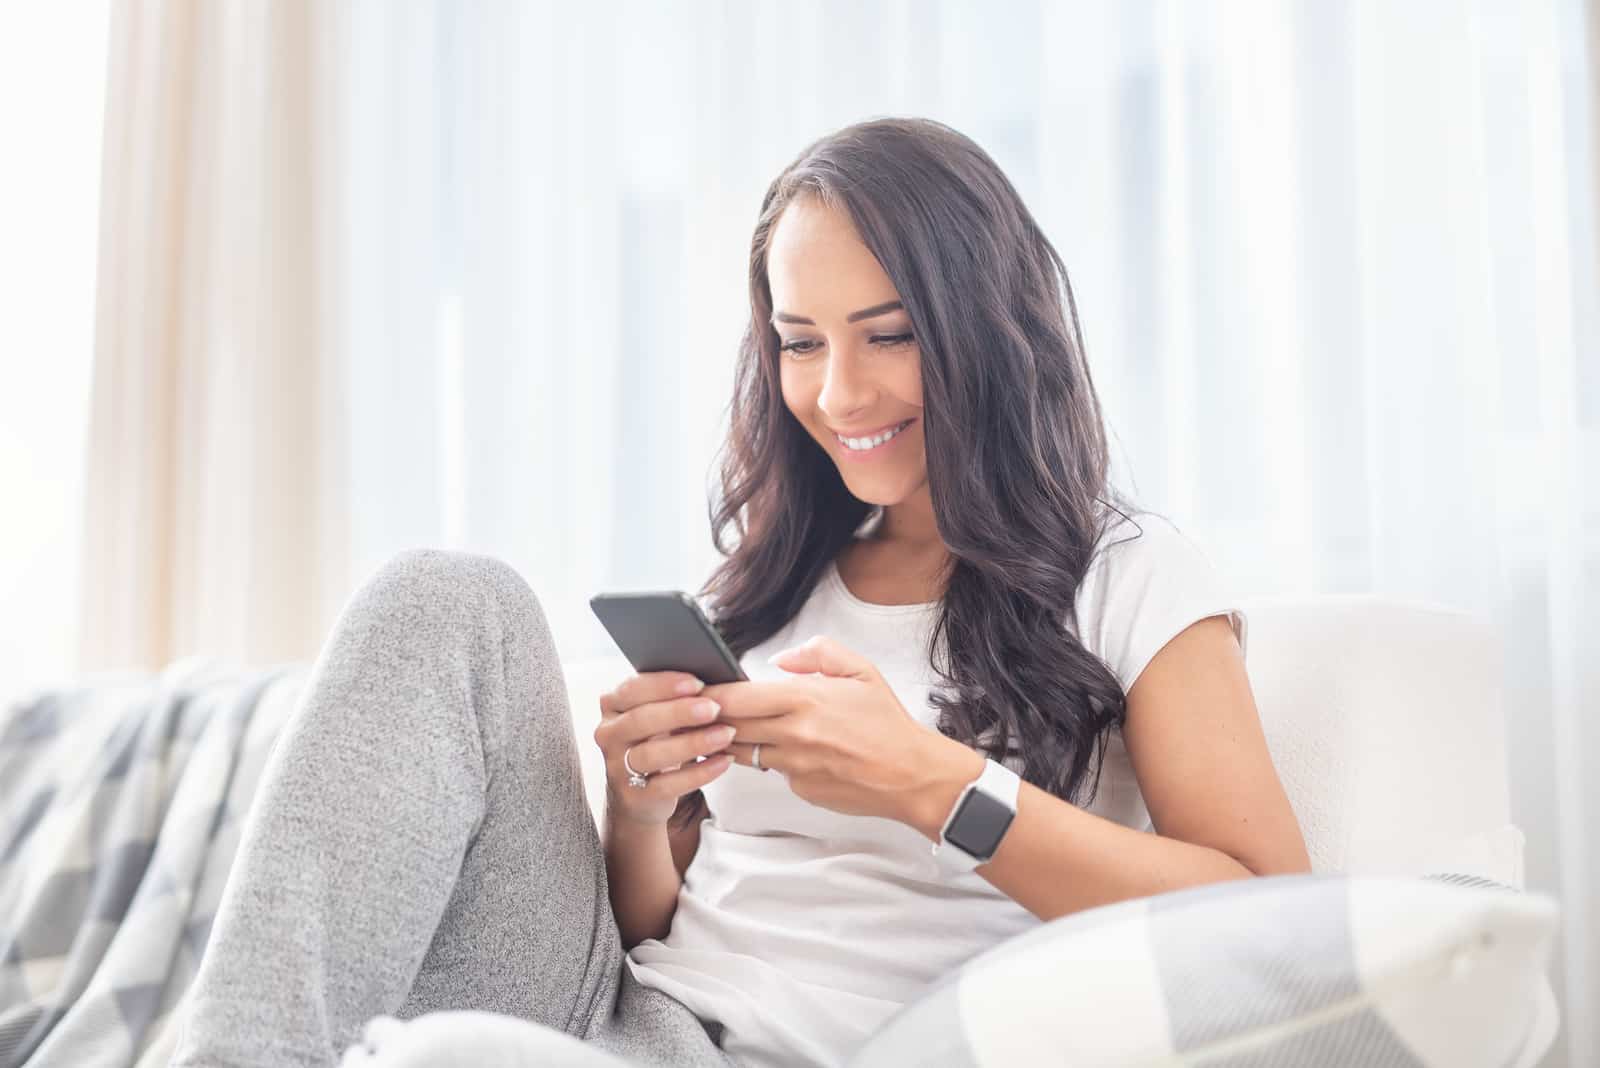 Une femme aux longs cheveux bruns est assise sur le canapé et appuie sur un bouton du téléphone